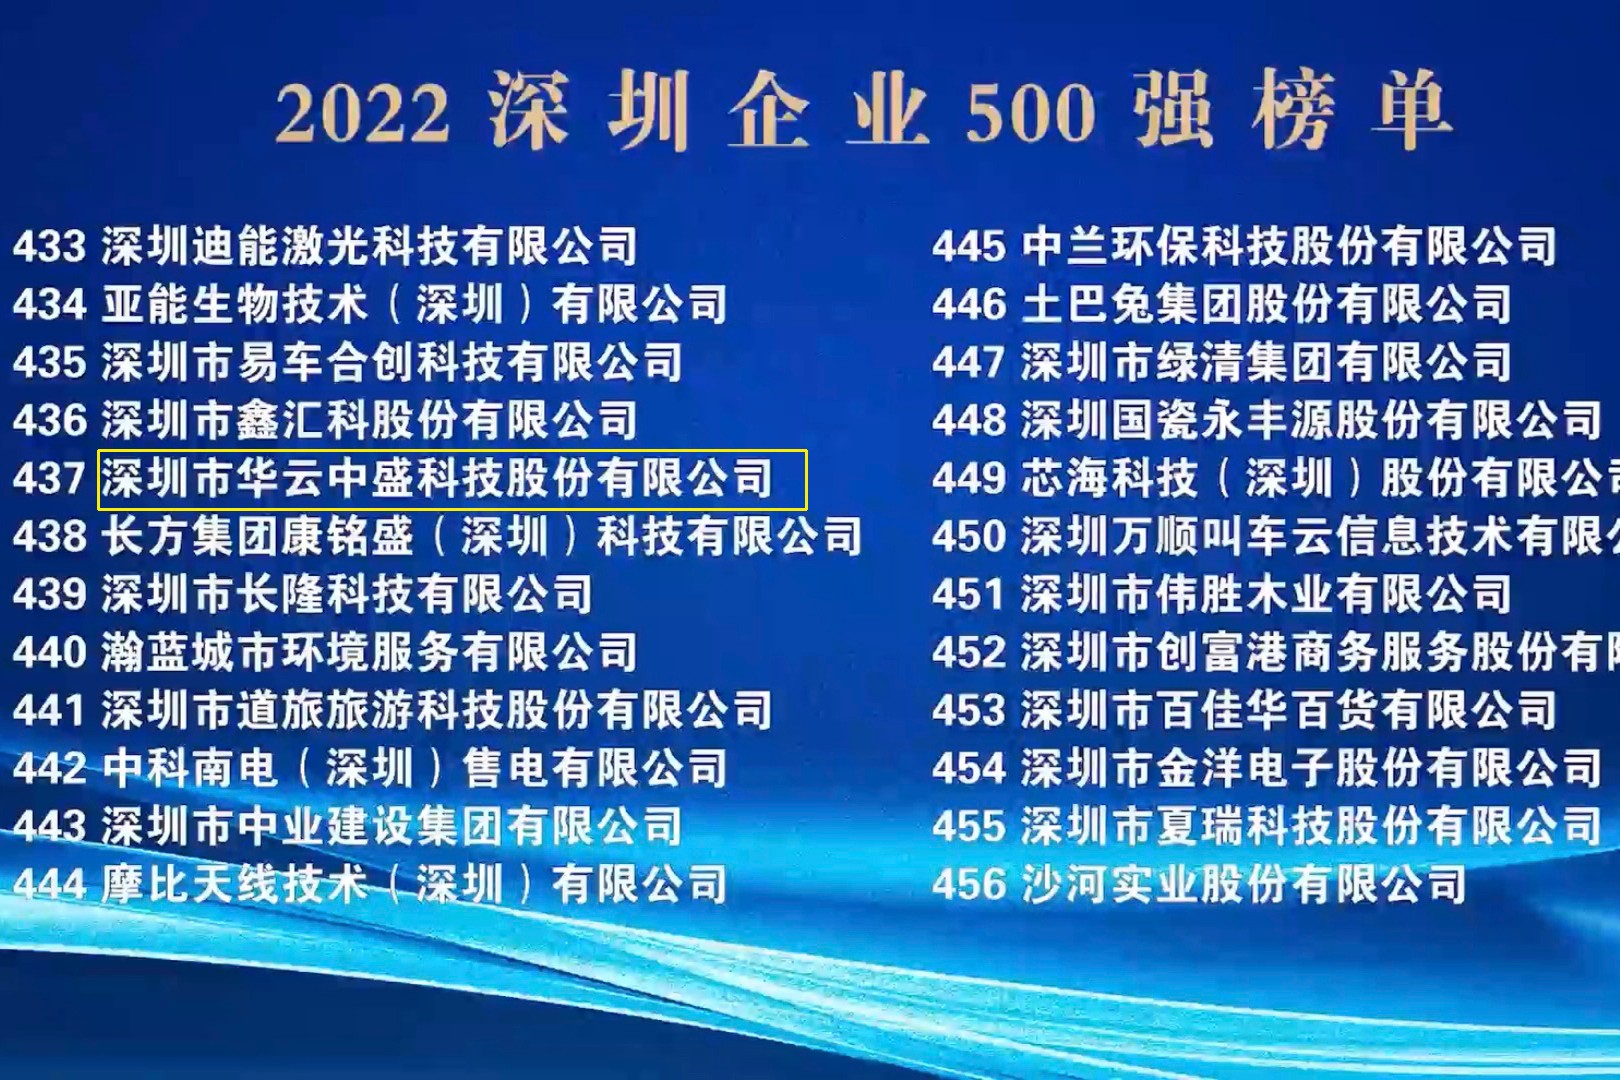 喜讯：威尼斯wns8885566再次荣登“深圳500强企业榜单”